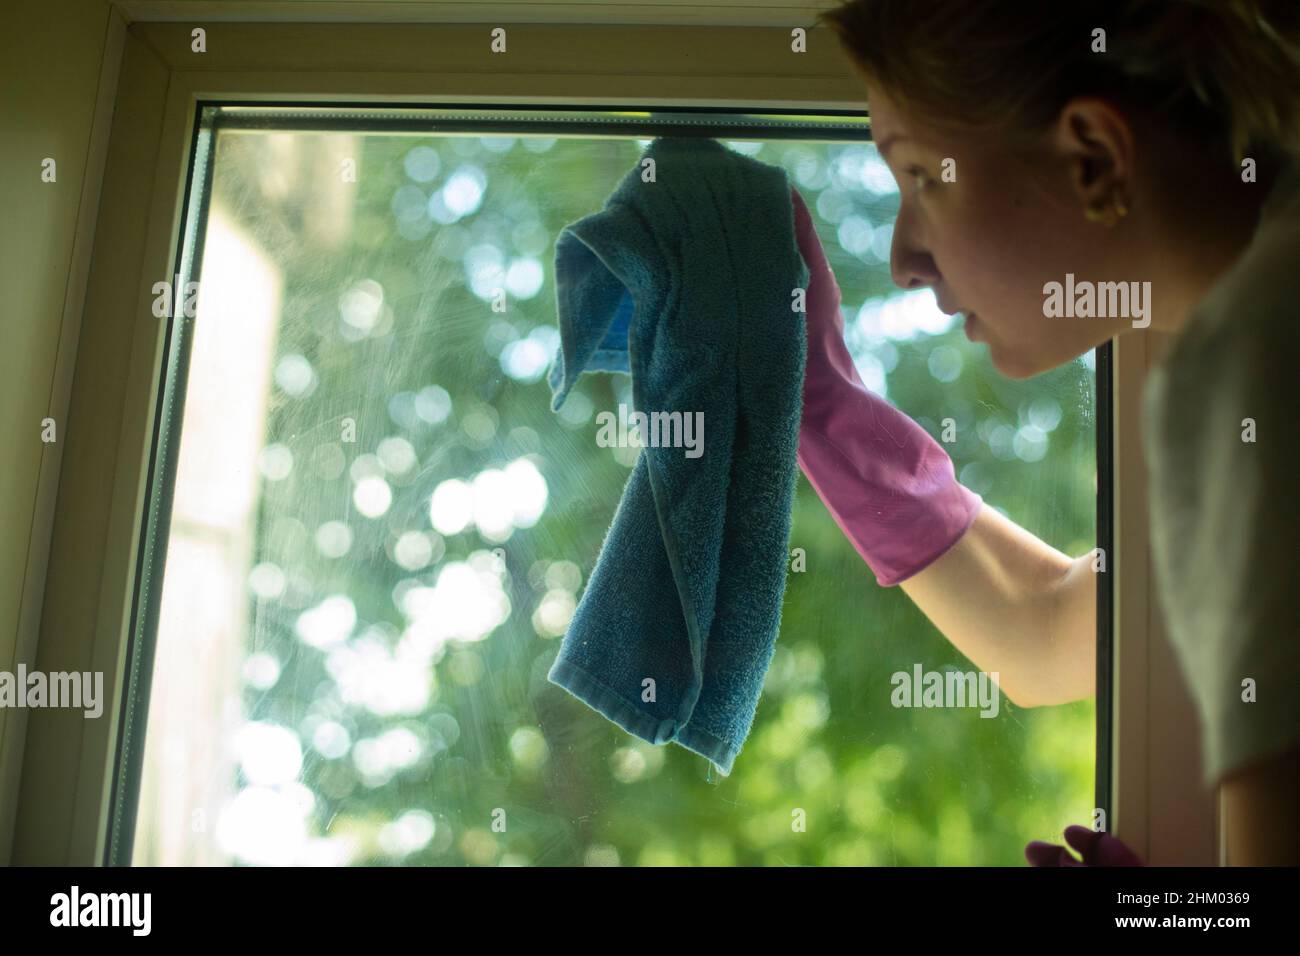 Das Mädchen wäscht das Fenster. Eine Frau hält einen Lappen in der Hand, um den Staub abzuwaschen. Das Mädchen putzt das Haus. Stockfoto